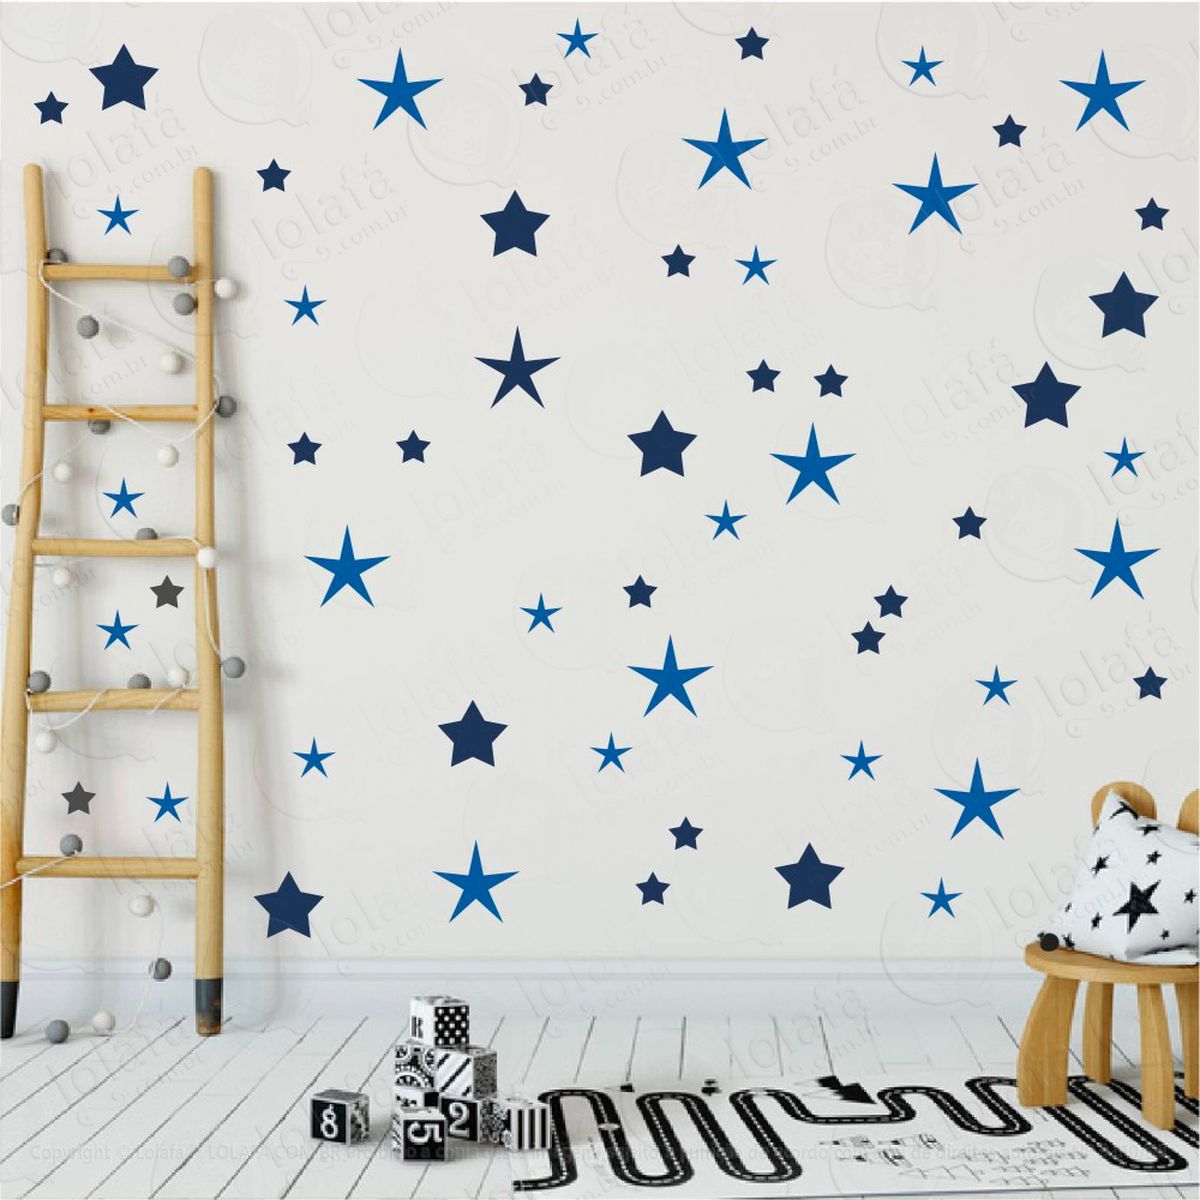 adesivos estrelas 90 peças adesivos para quarto de bebê infantil - mod:17